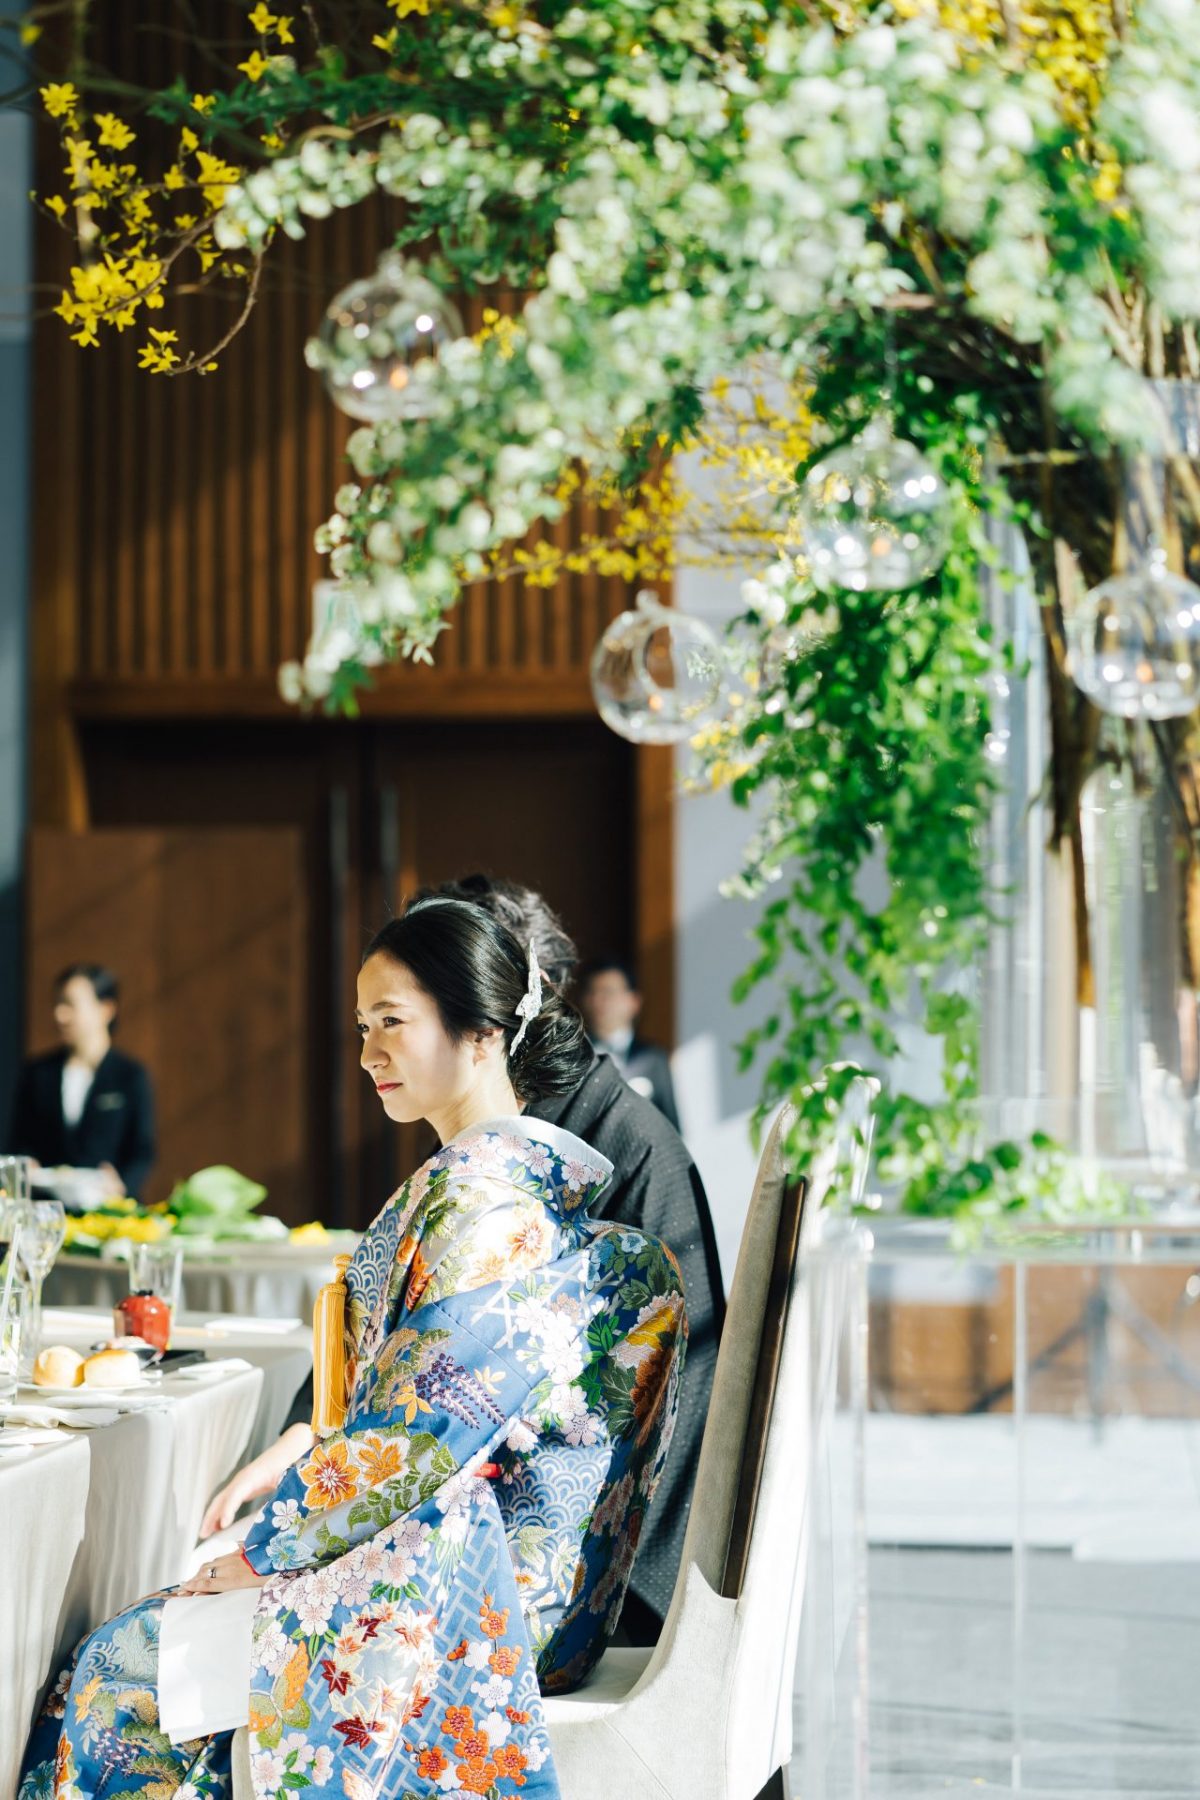 パレスホテル東京の提携ドレスショップ、ザ・トリート・ドレッシング アディション店でお選びになられた、青地に古典柄の色打掛をお色直しの衣裳として再入場されました